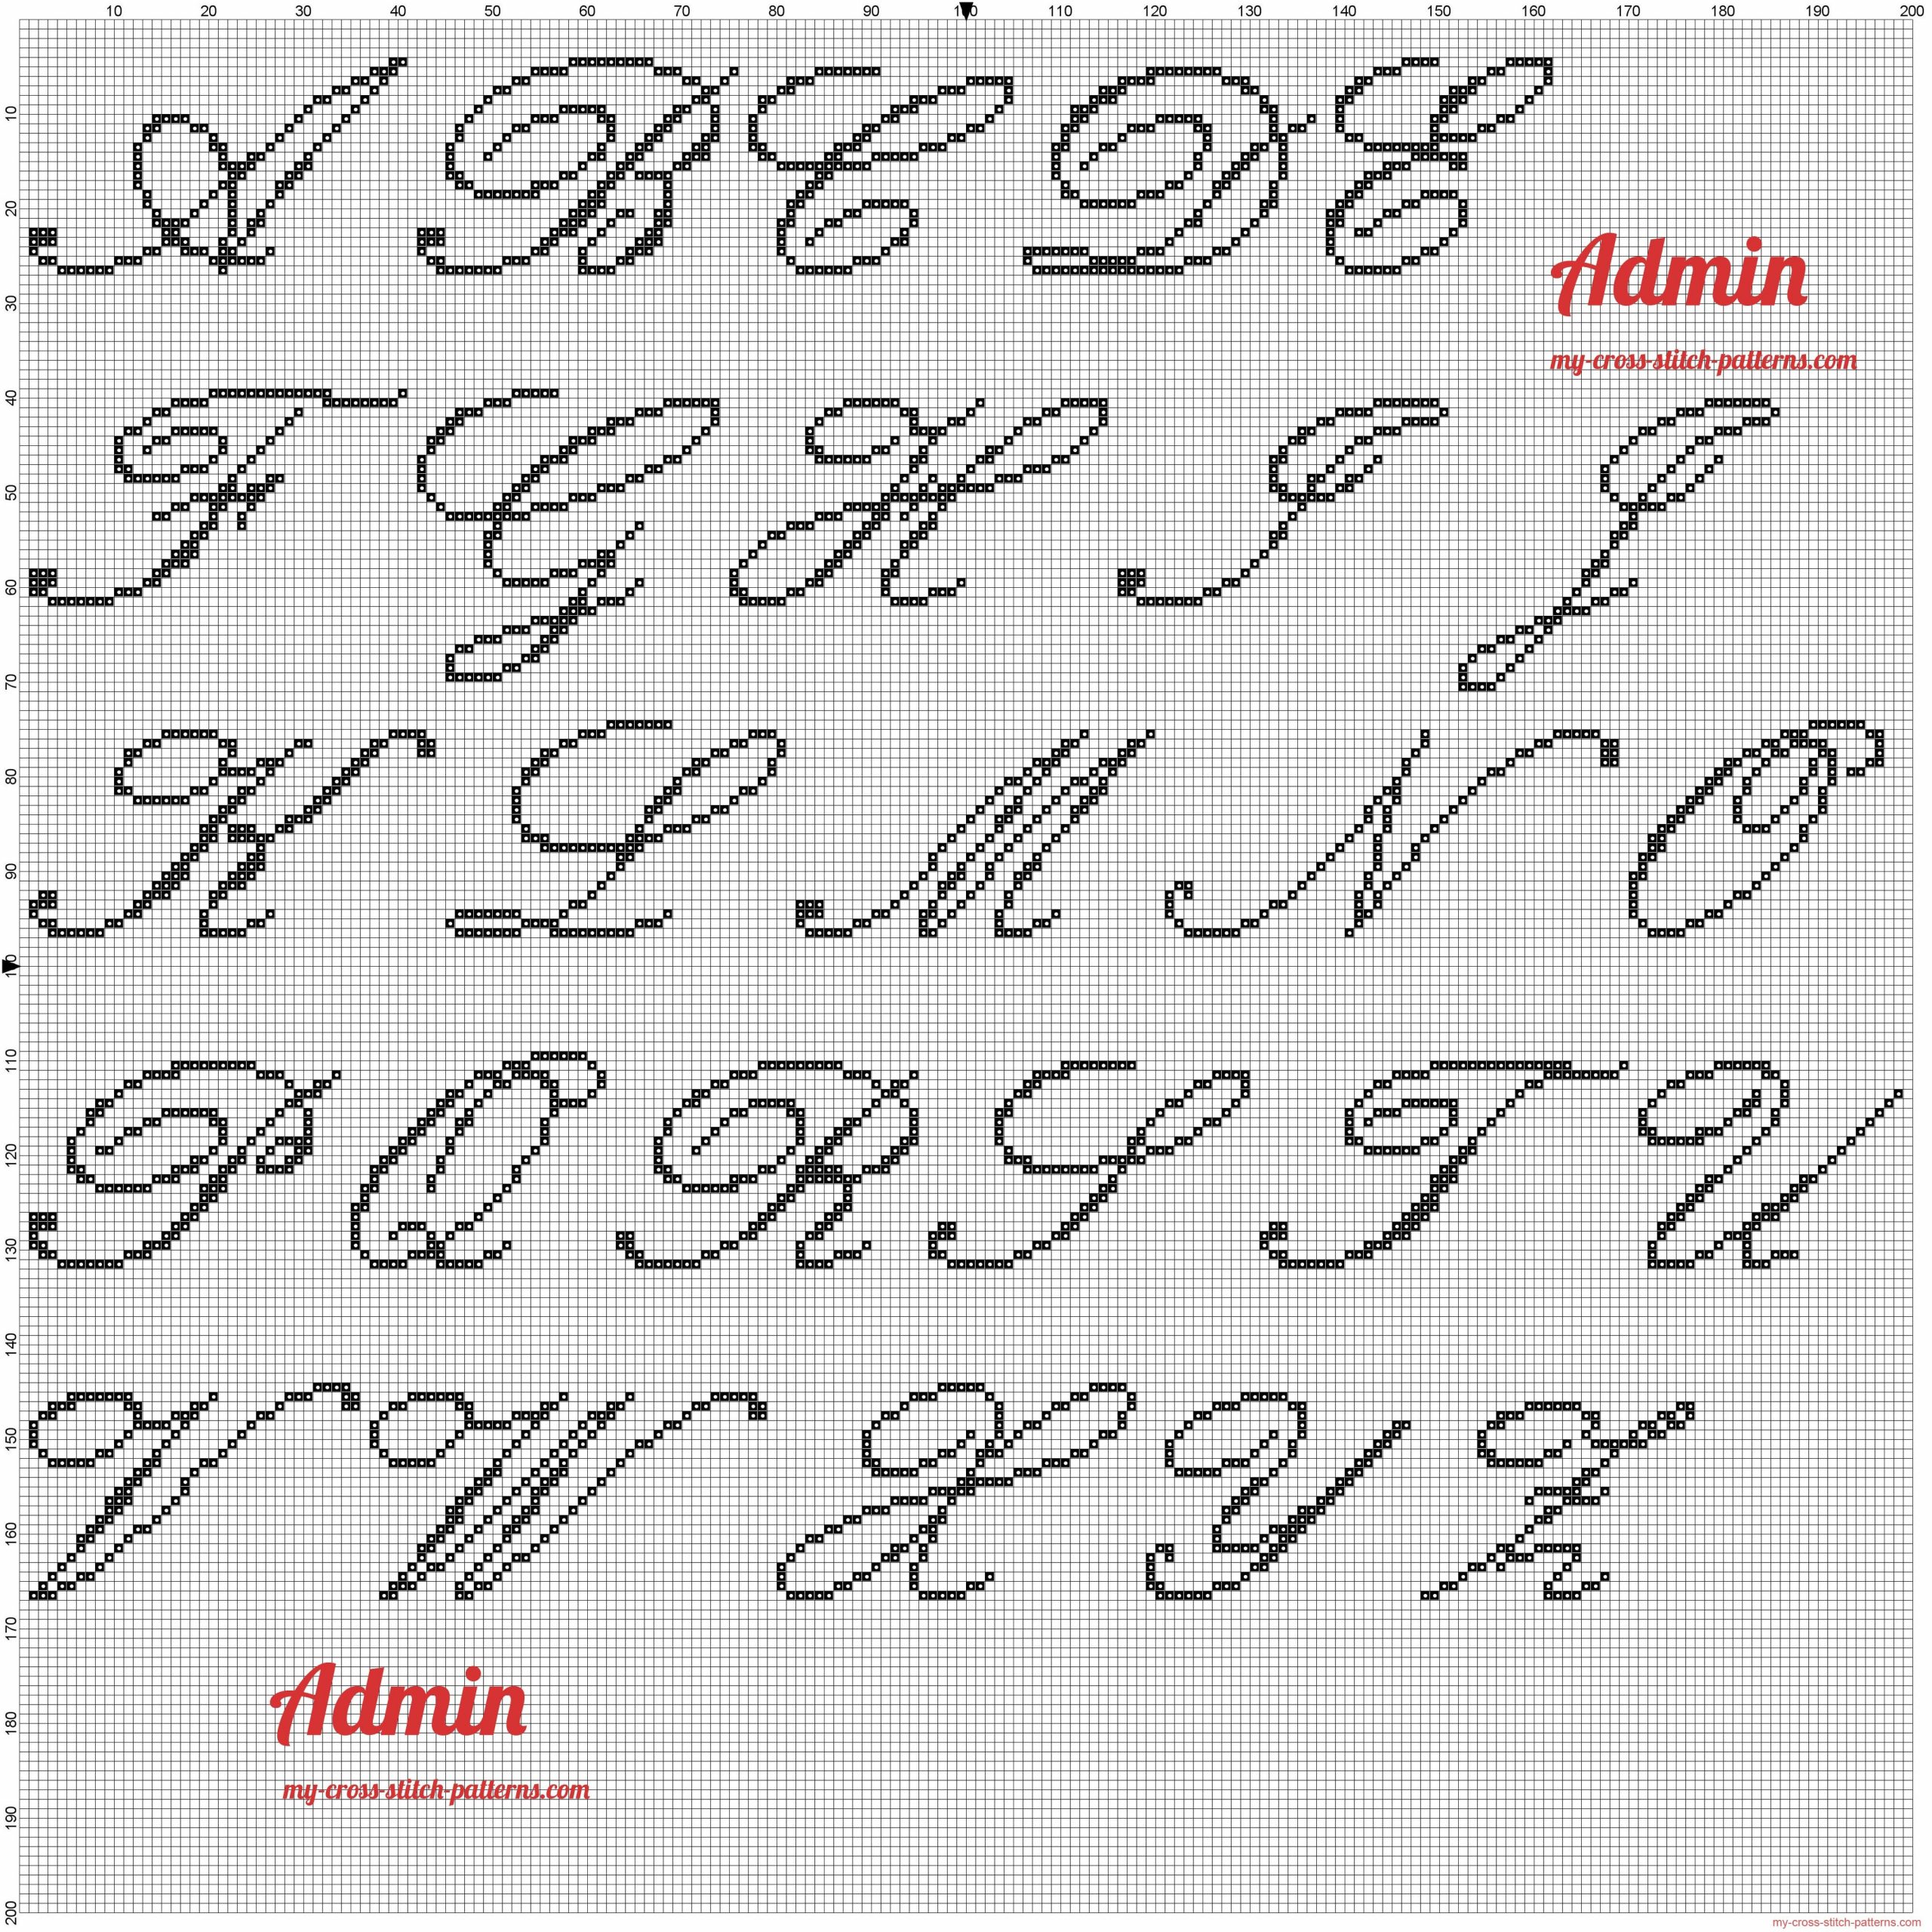 Alphabet Majuscule Kunstler Script Grille Point De Croix intérieur Modele Calligraphie Alphabet Gratuit